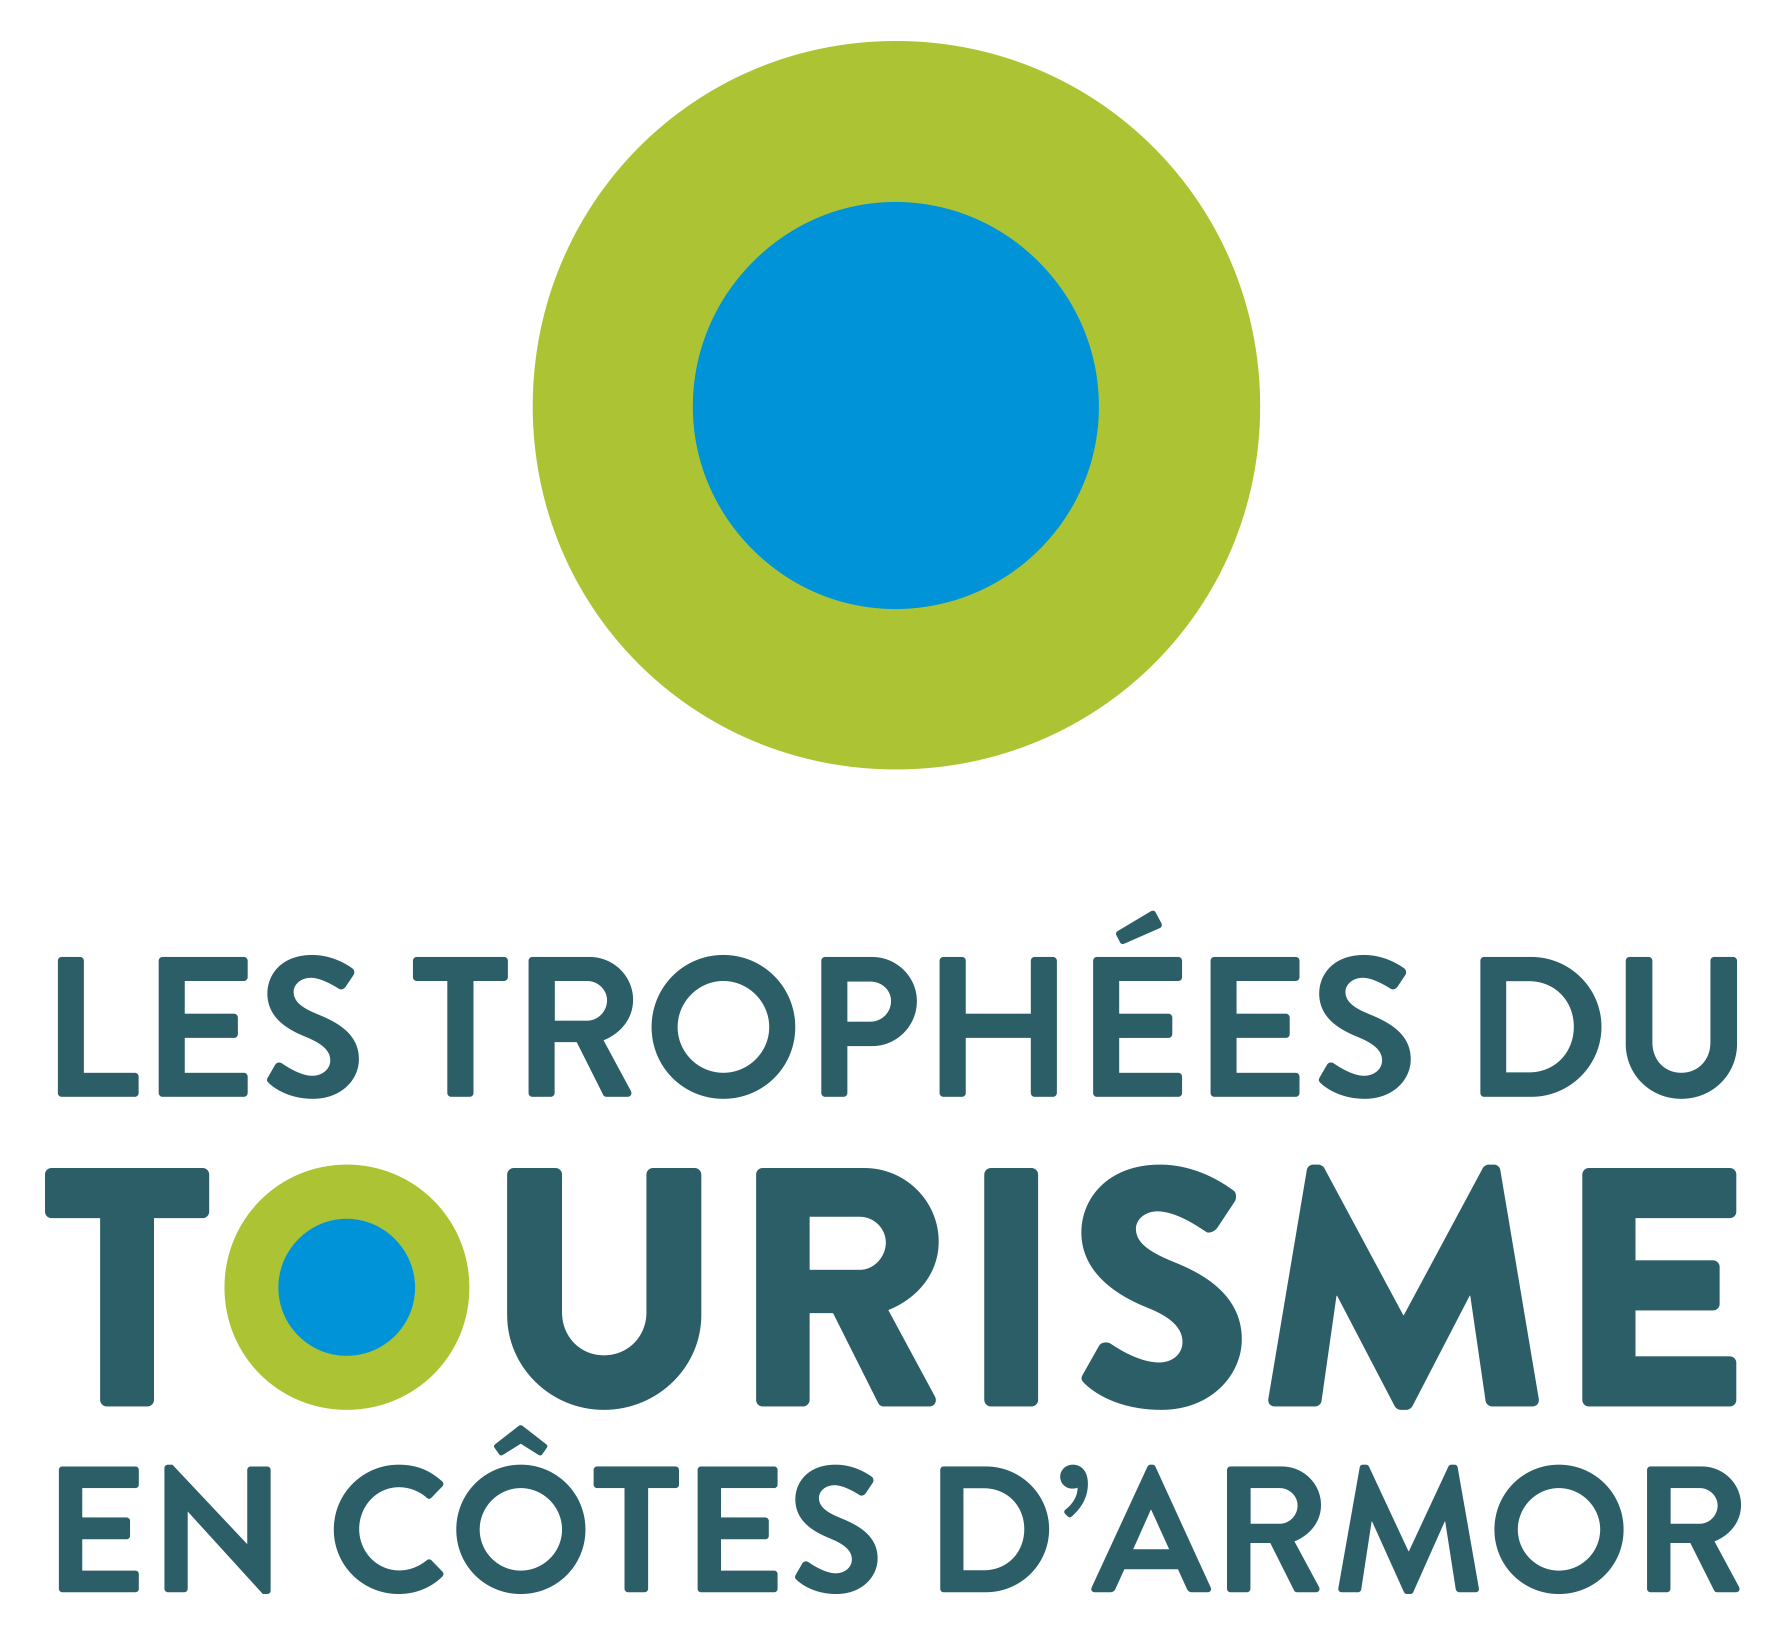 Visuel non libre de droit -Les trophées du tourisme en Côtes d'Armor